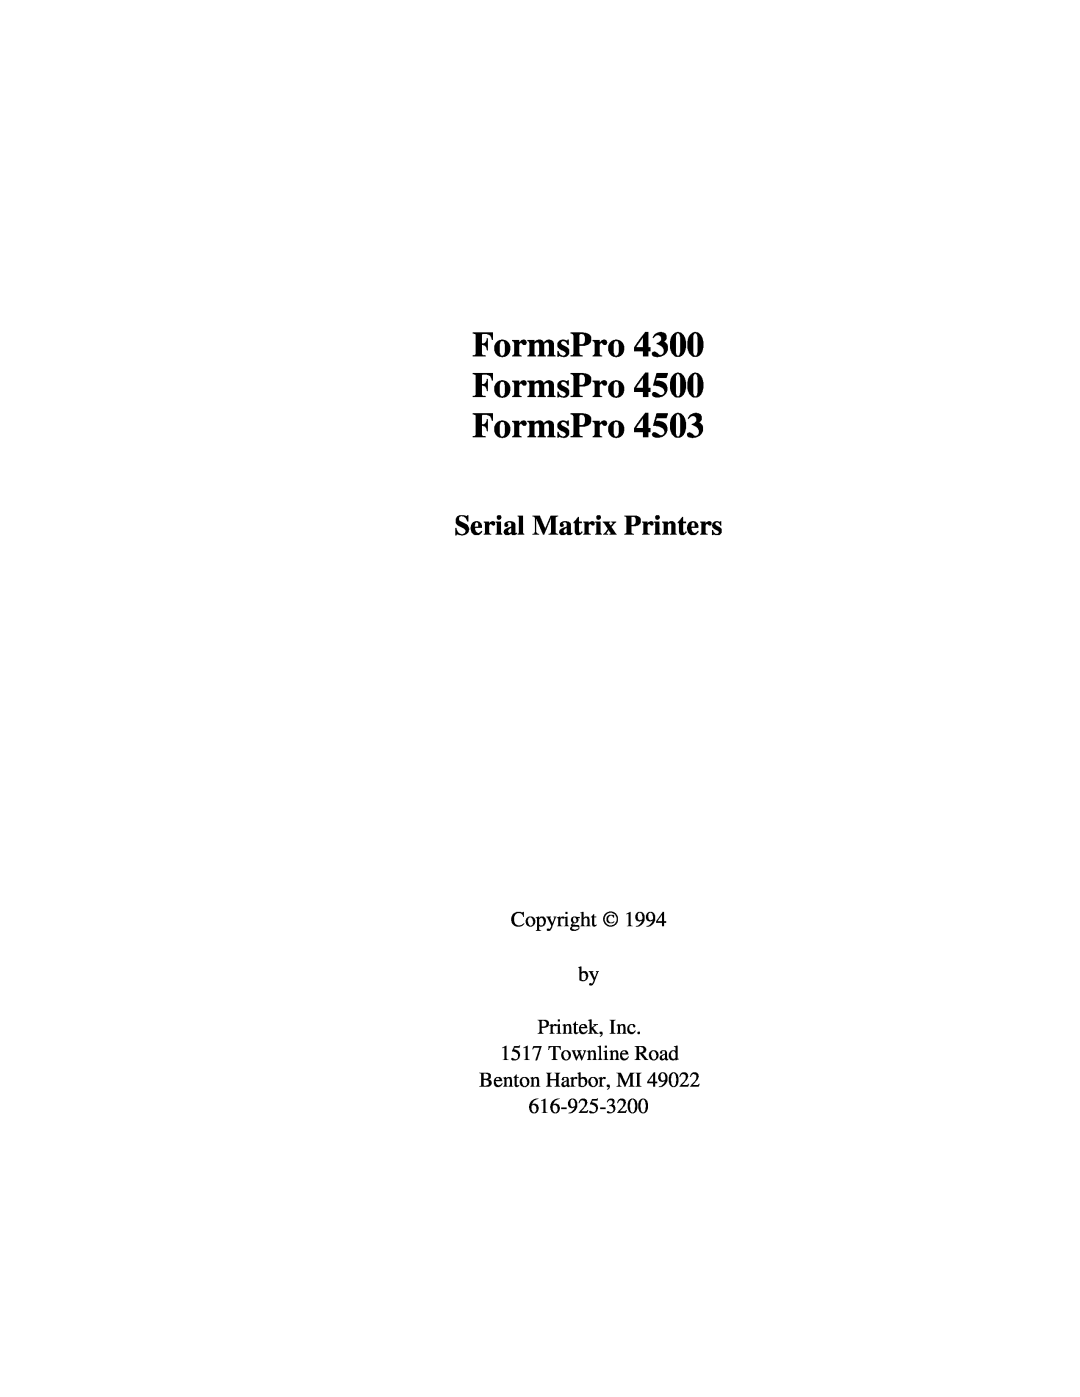 Printek 4300, 4503, 4500 manual FormsPro FormsPro FormsPro, Serial Matrix Printers 